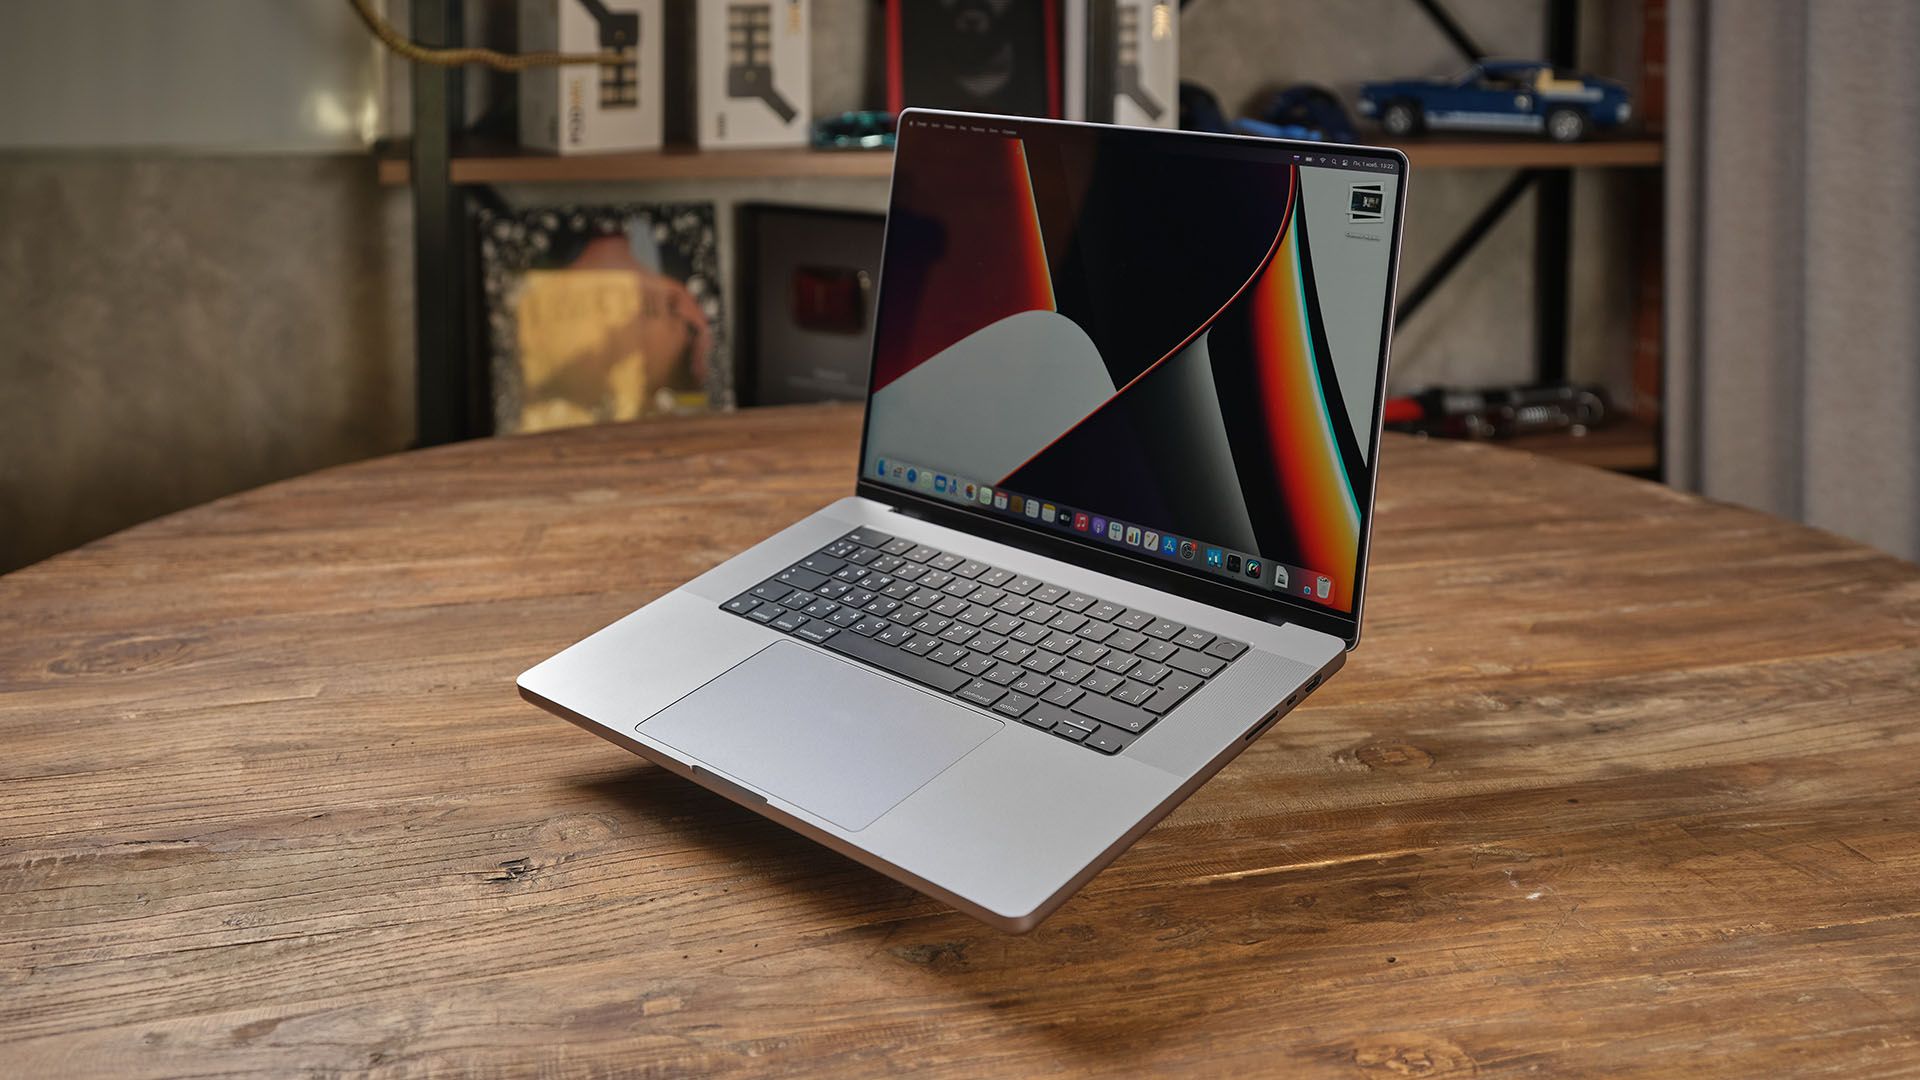 Владельцы MacBook Pro отмечают более плавную прокрутку в Safari после установки macOS Monterey 12.2